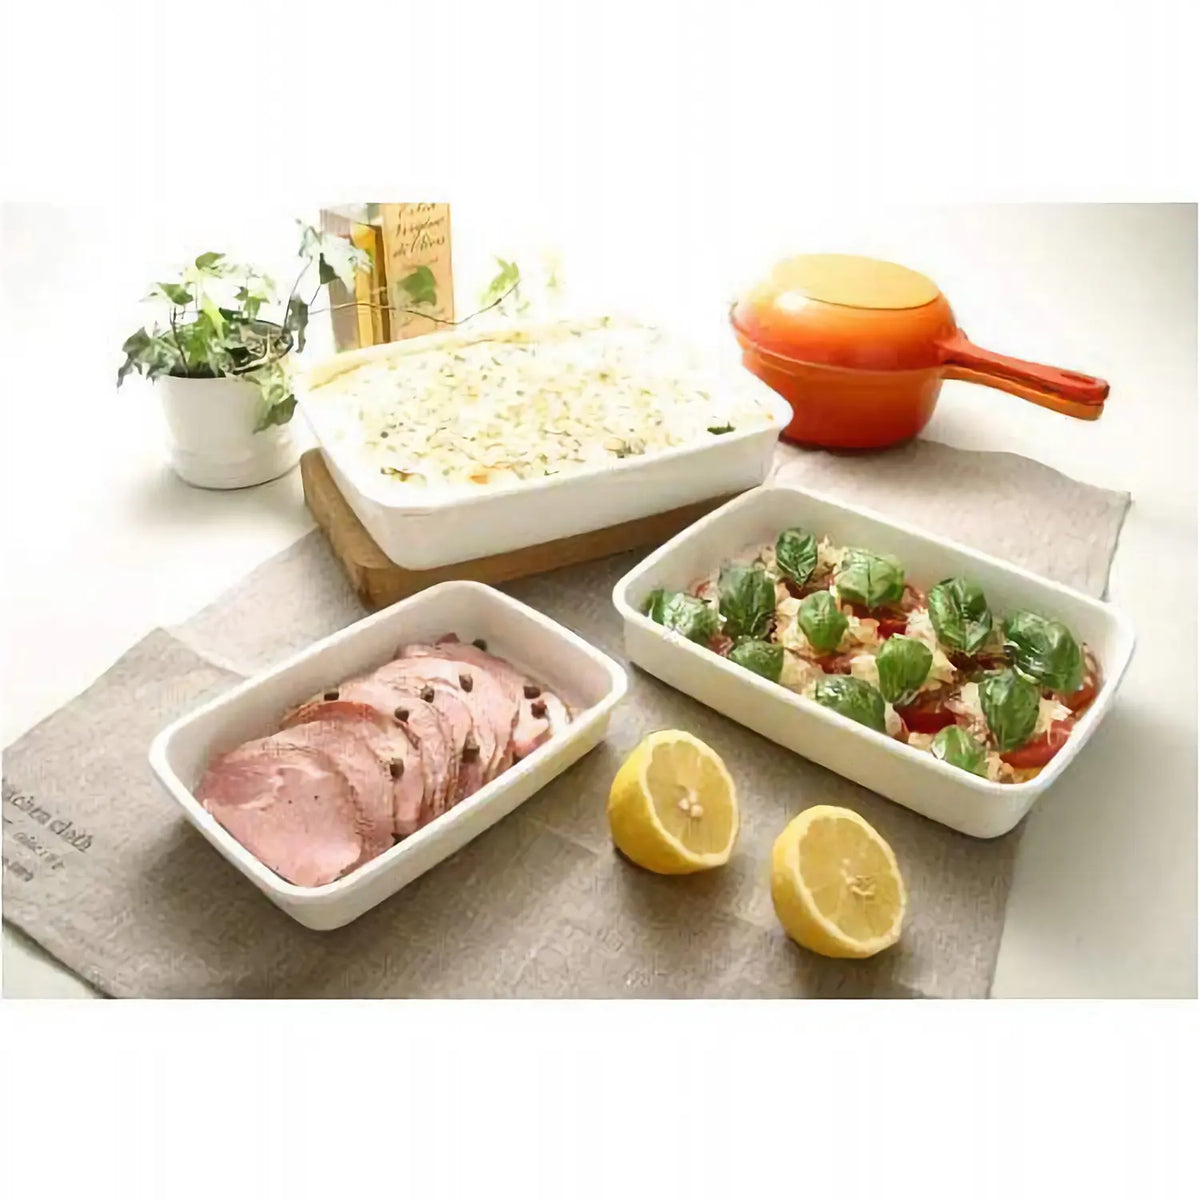 Noda Horo White Series - Enamel Nestable Meal Prep Baking Tray